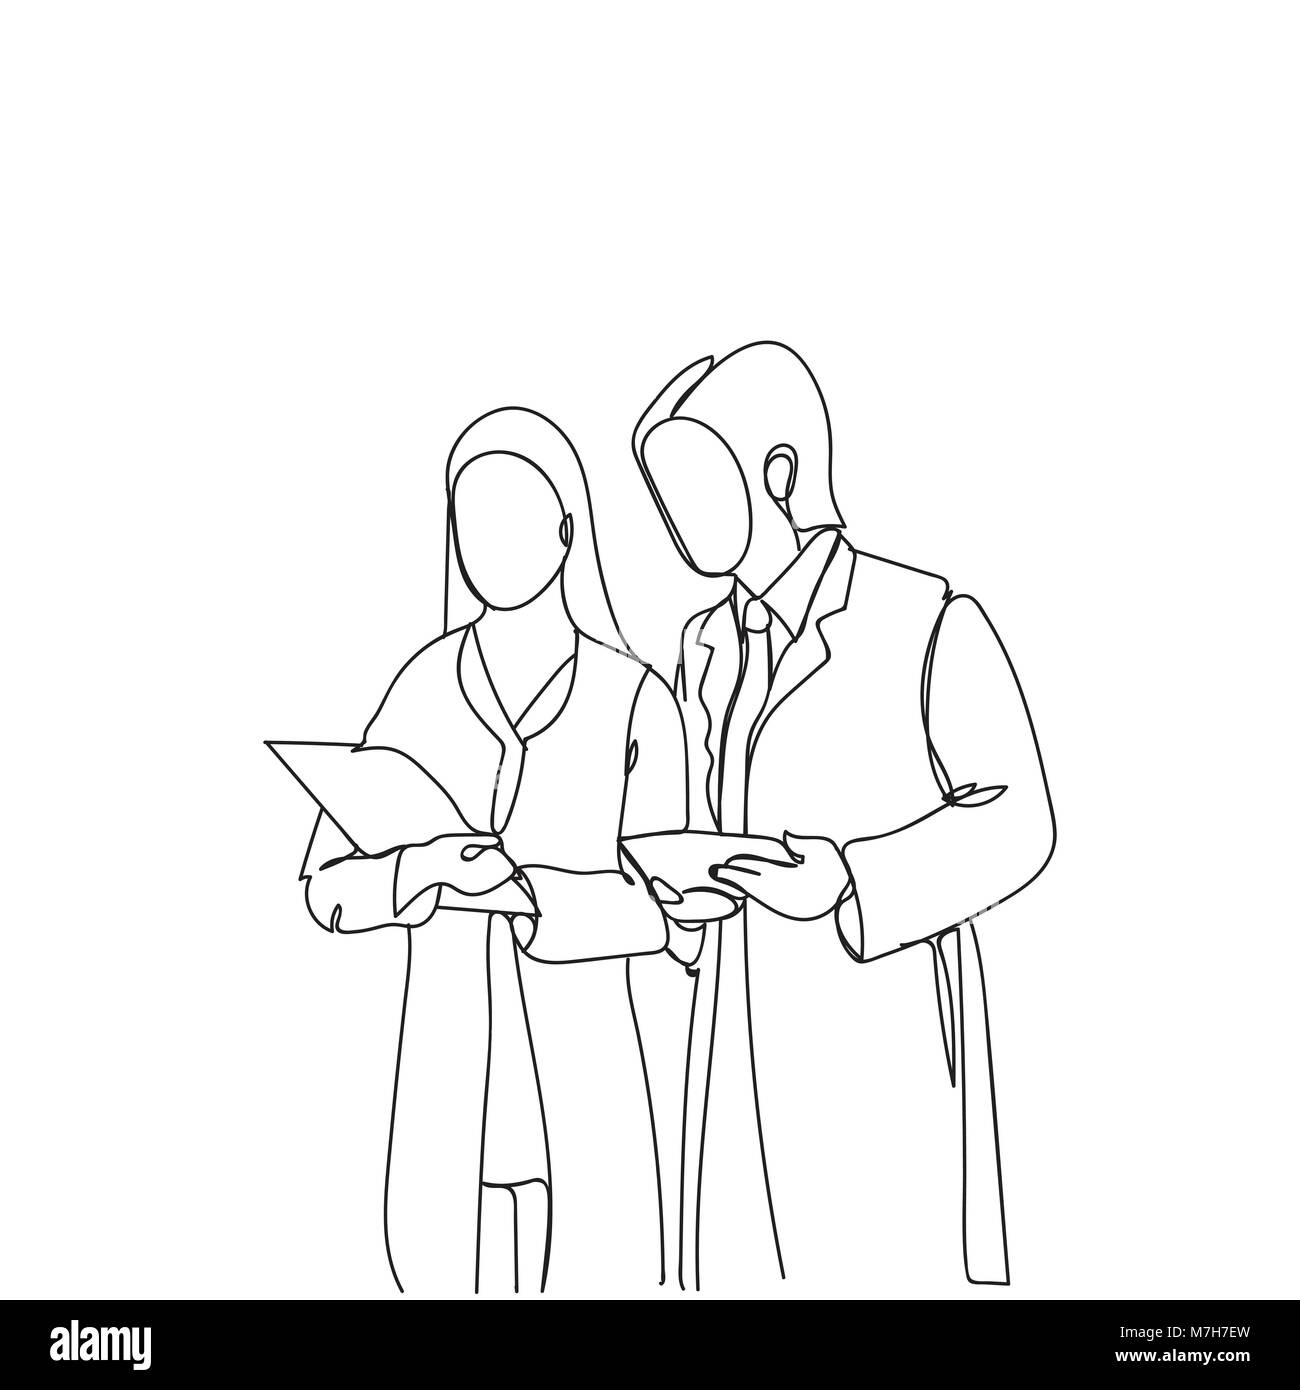 Silhouette Mann und Frau Wissenschaftler in weißen Kitteln lesen Dokumentenanalyse Doodle Forscher Stock Vektor